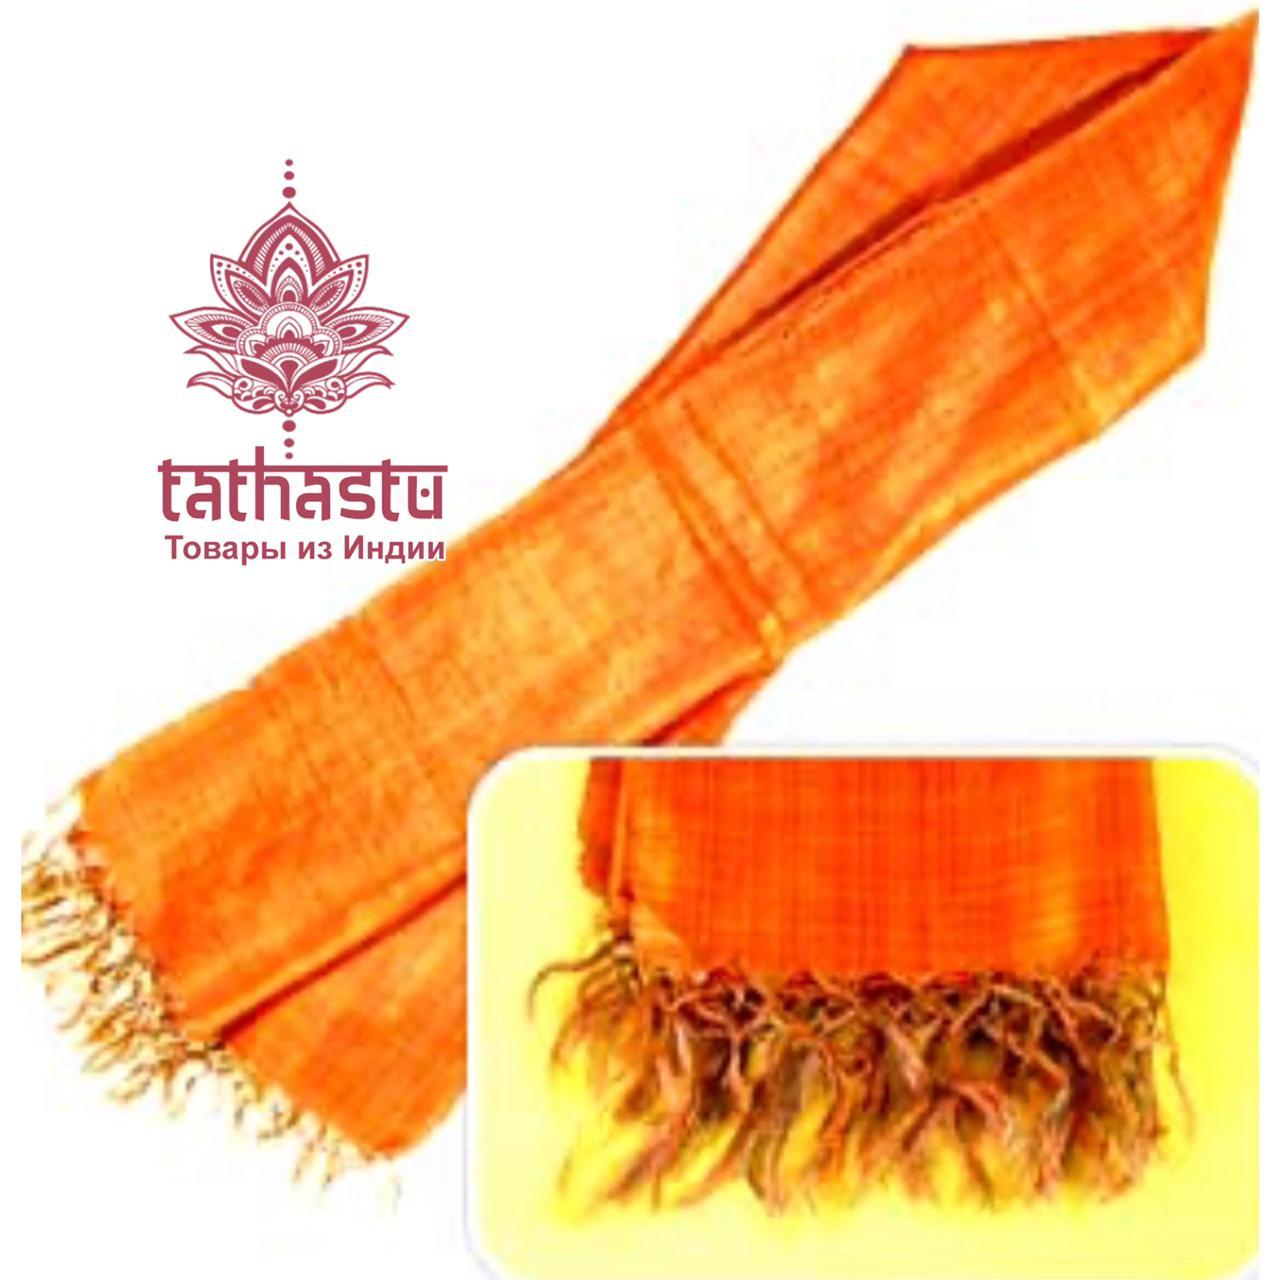 Tathastu индийский шарф из вискозы и шёлка. Tathastu товары и индии